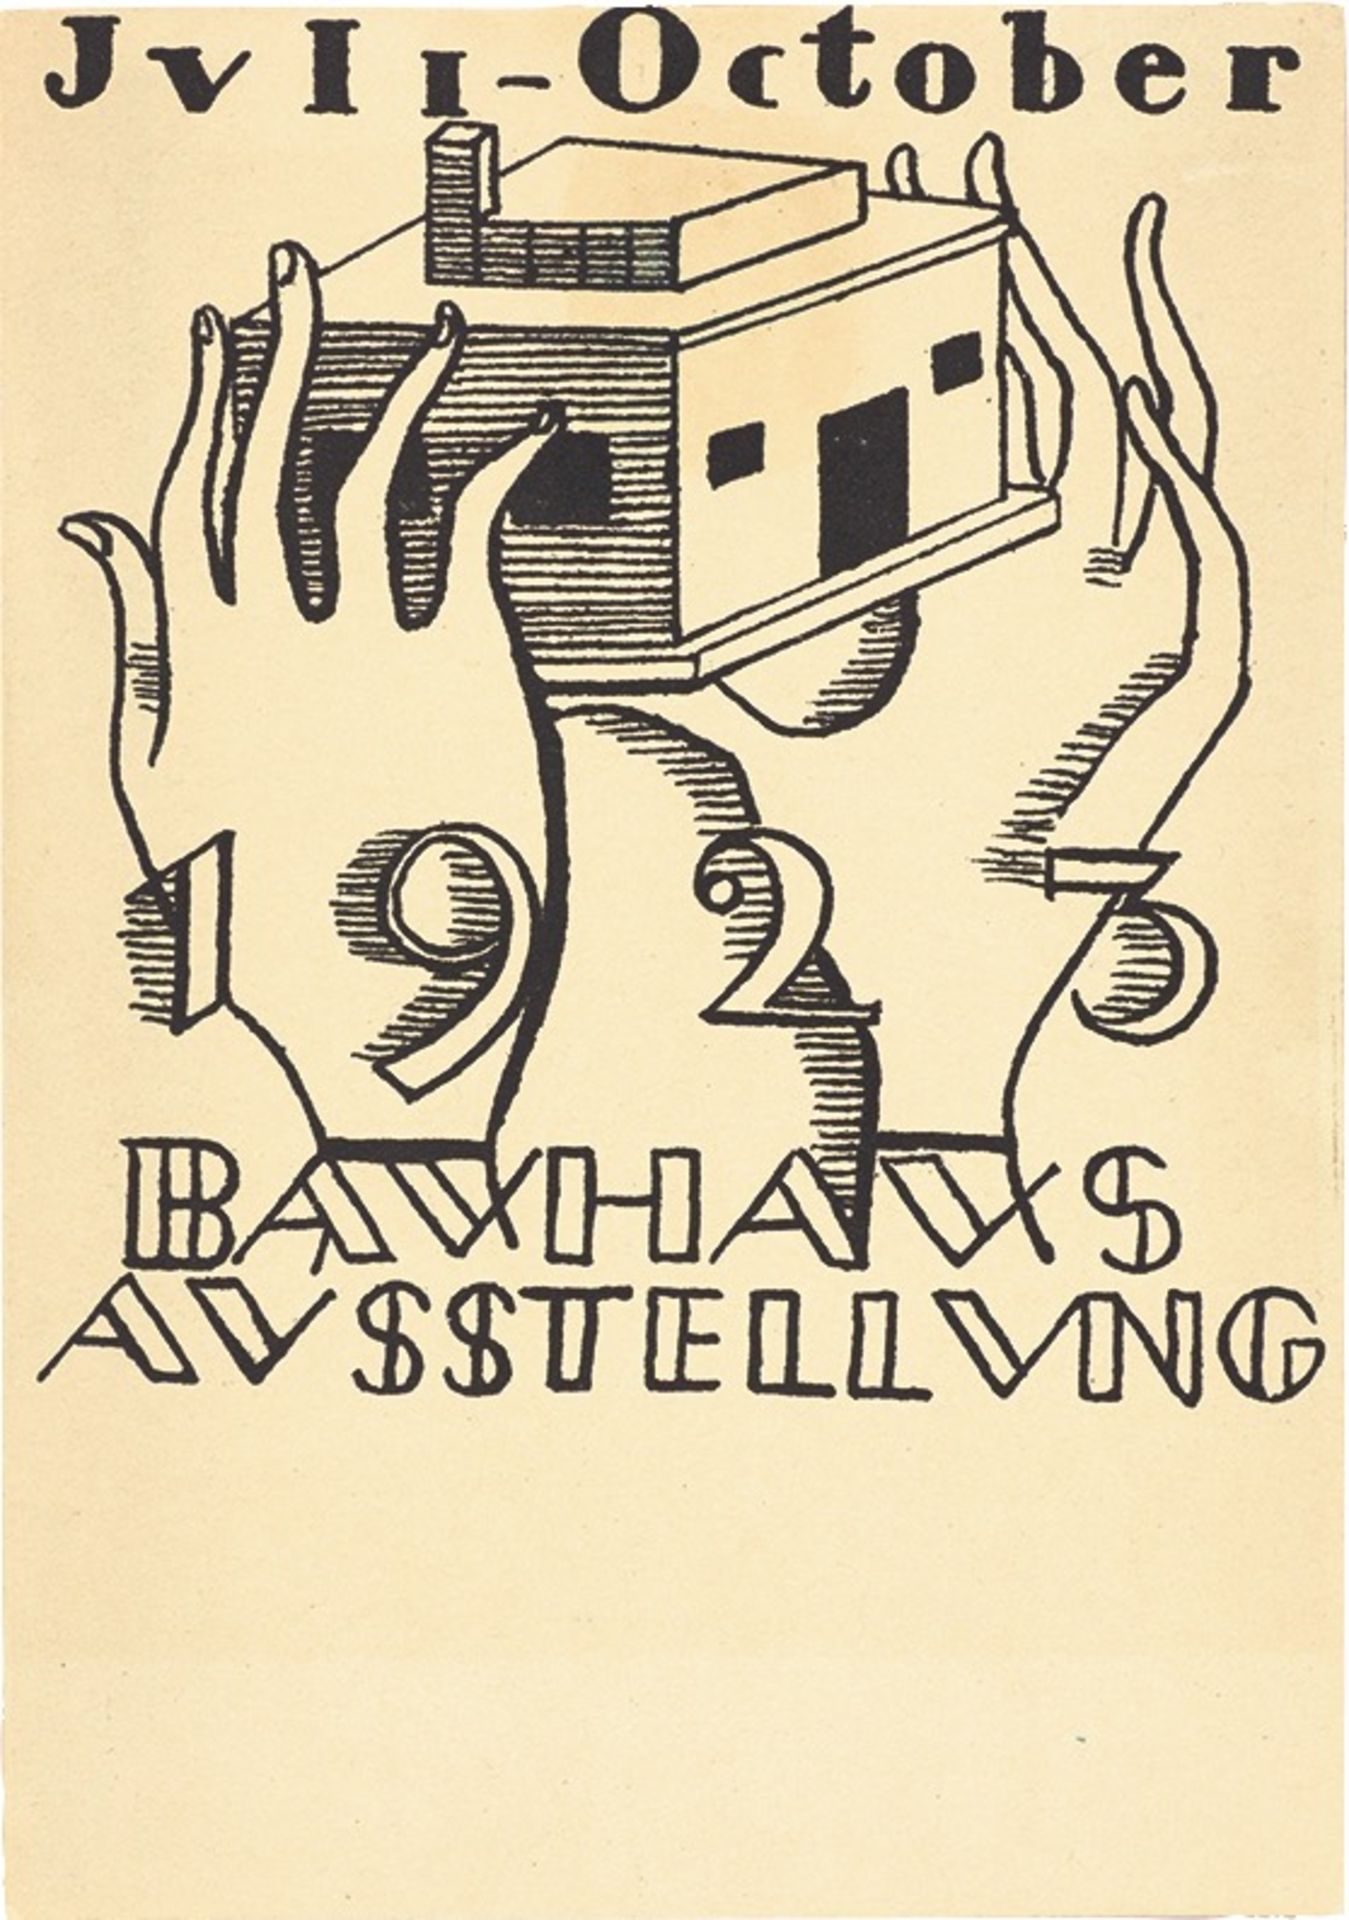 Bauhaus. ”Ausstellung Weimar 1923” – 20 postcards by various Bauhaus artists. 1923 - Image 6 of 20